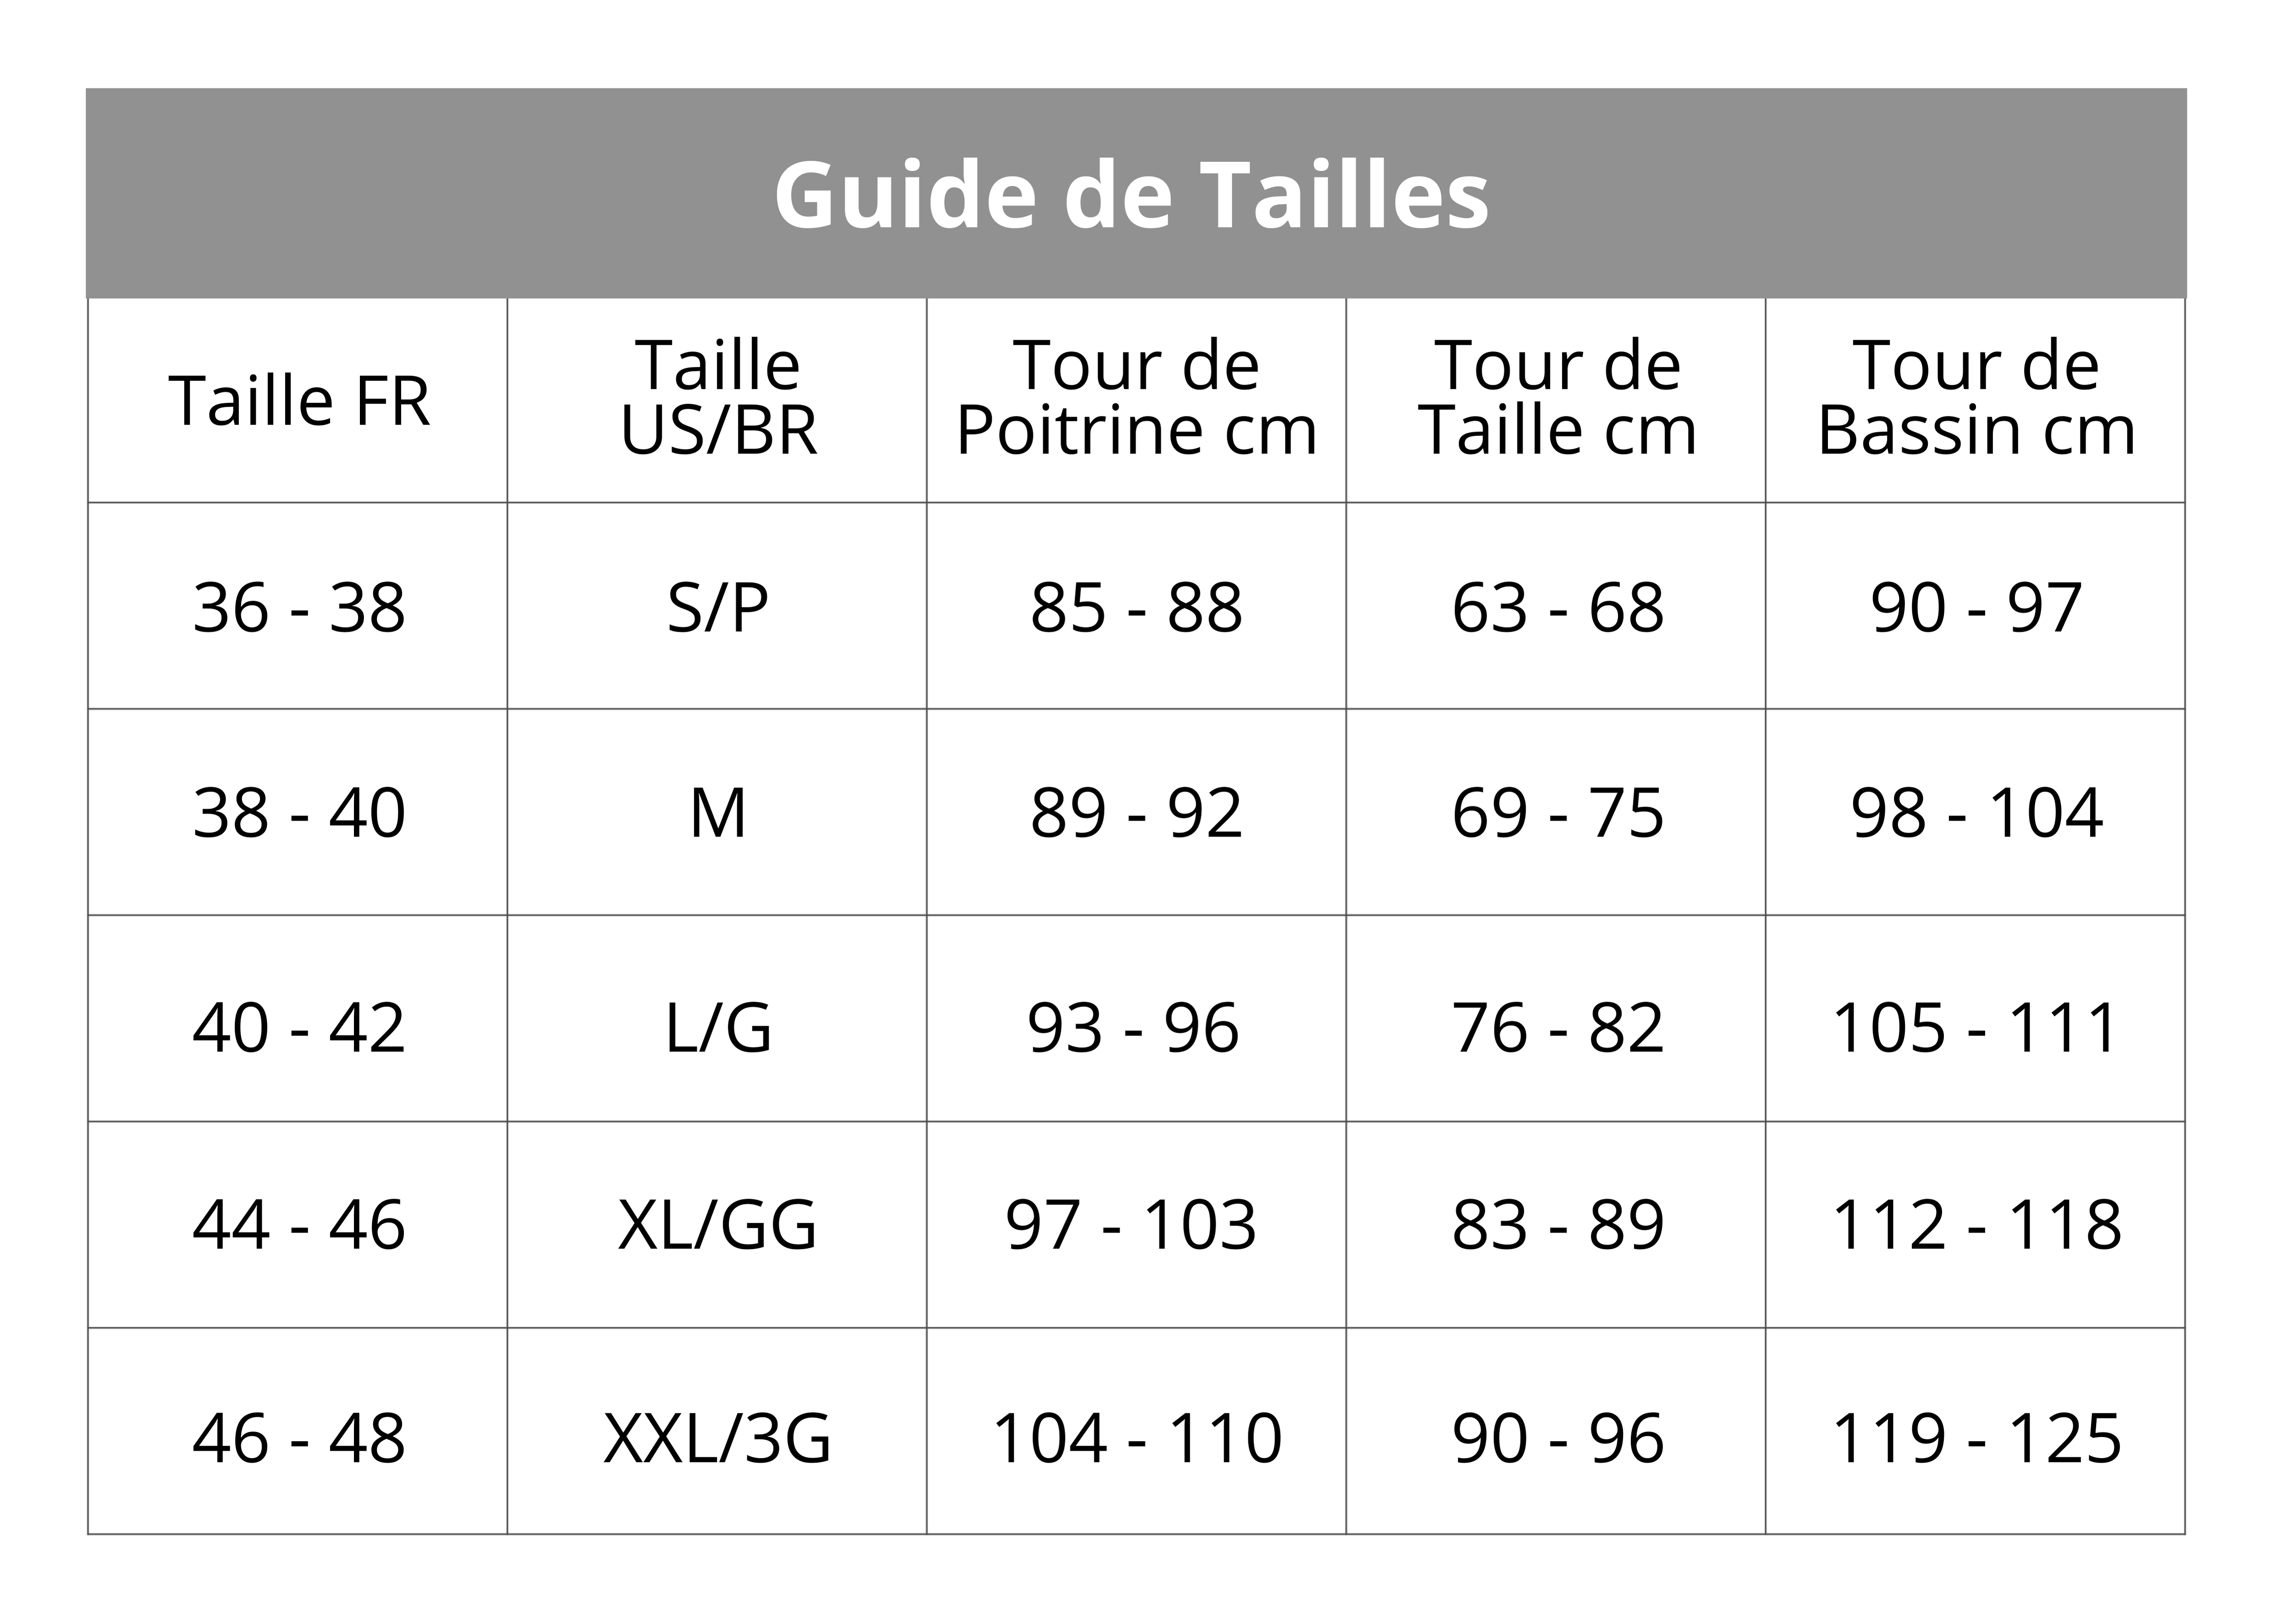 Guide de Tailles MBB